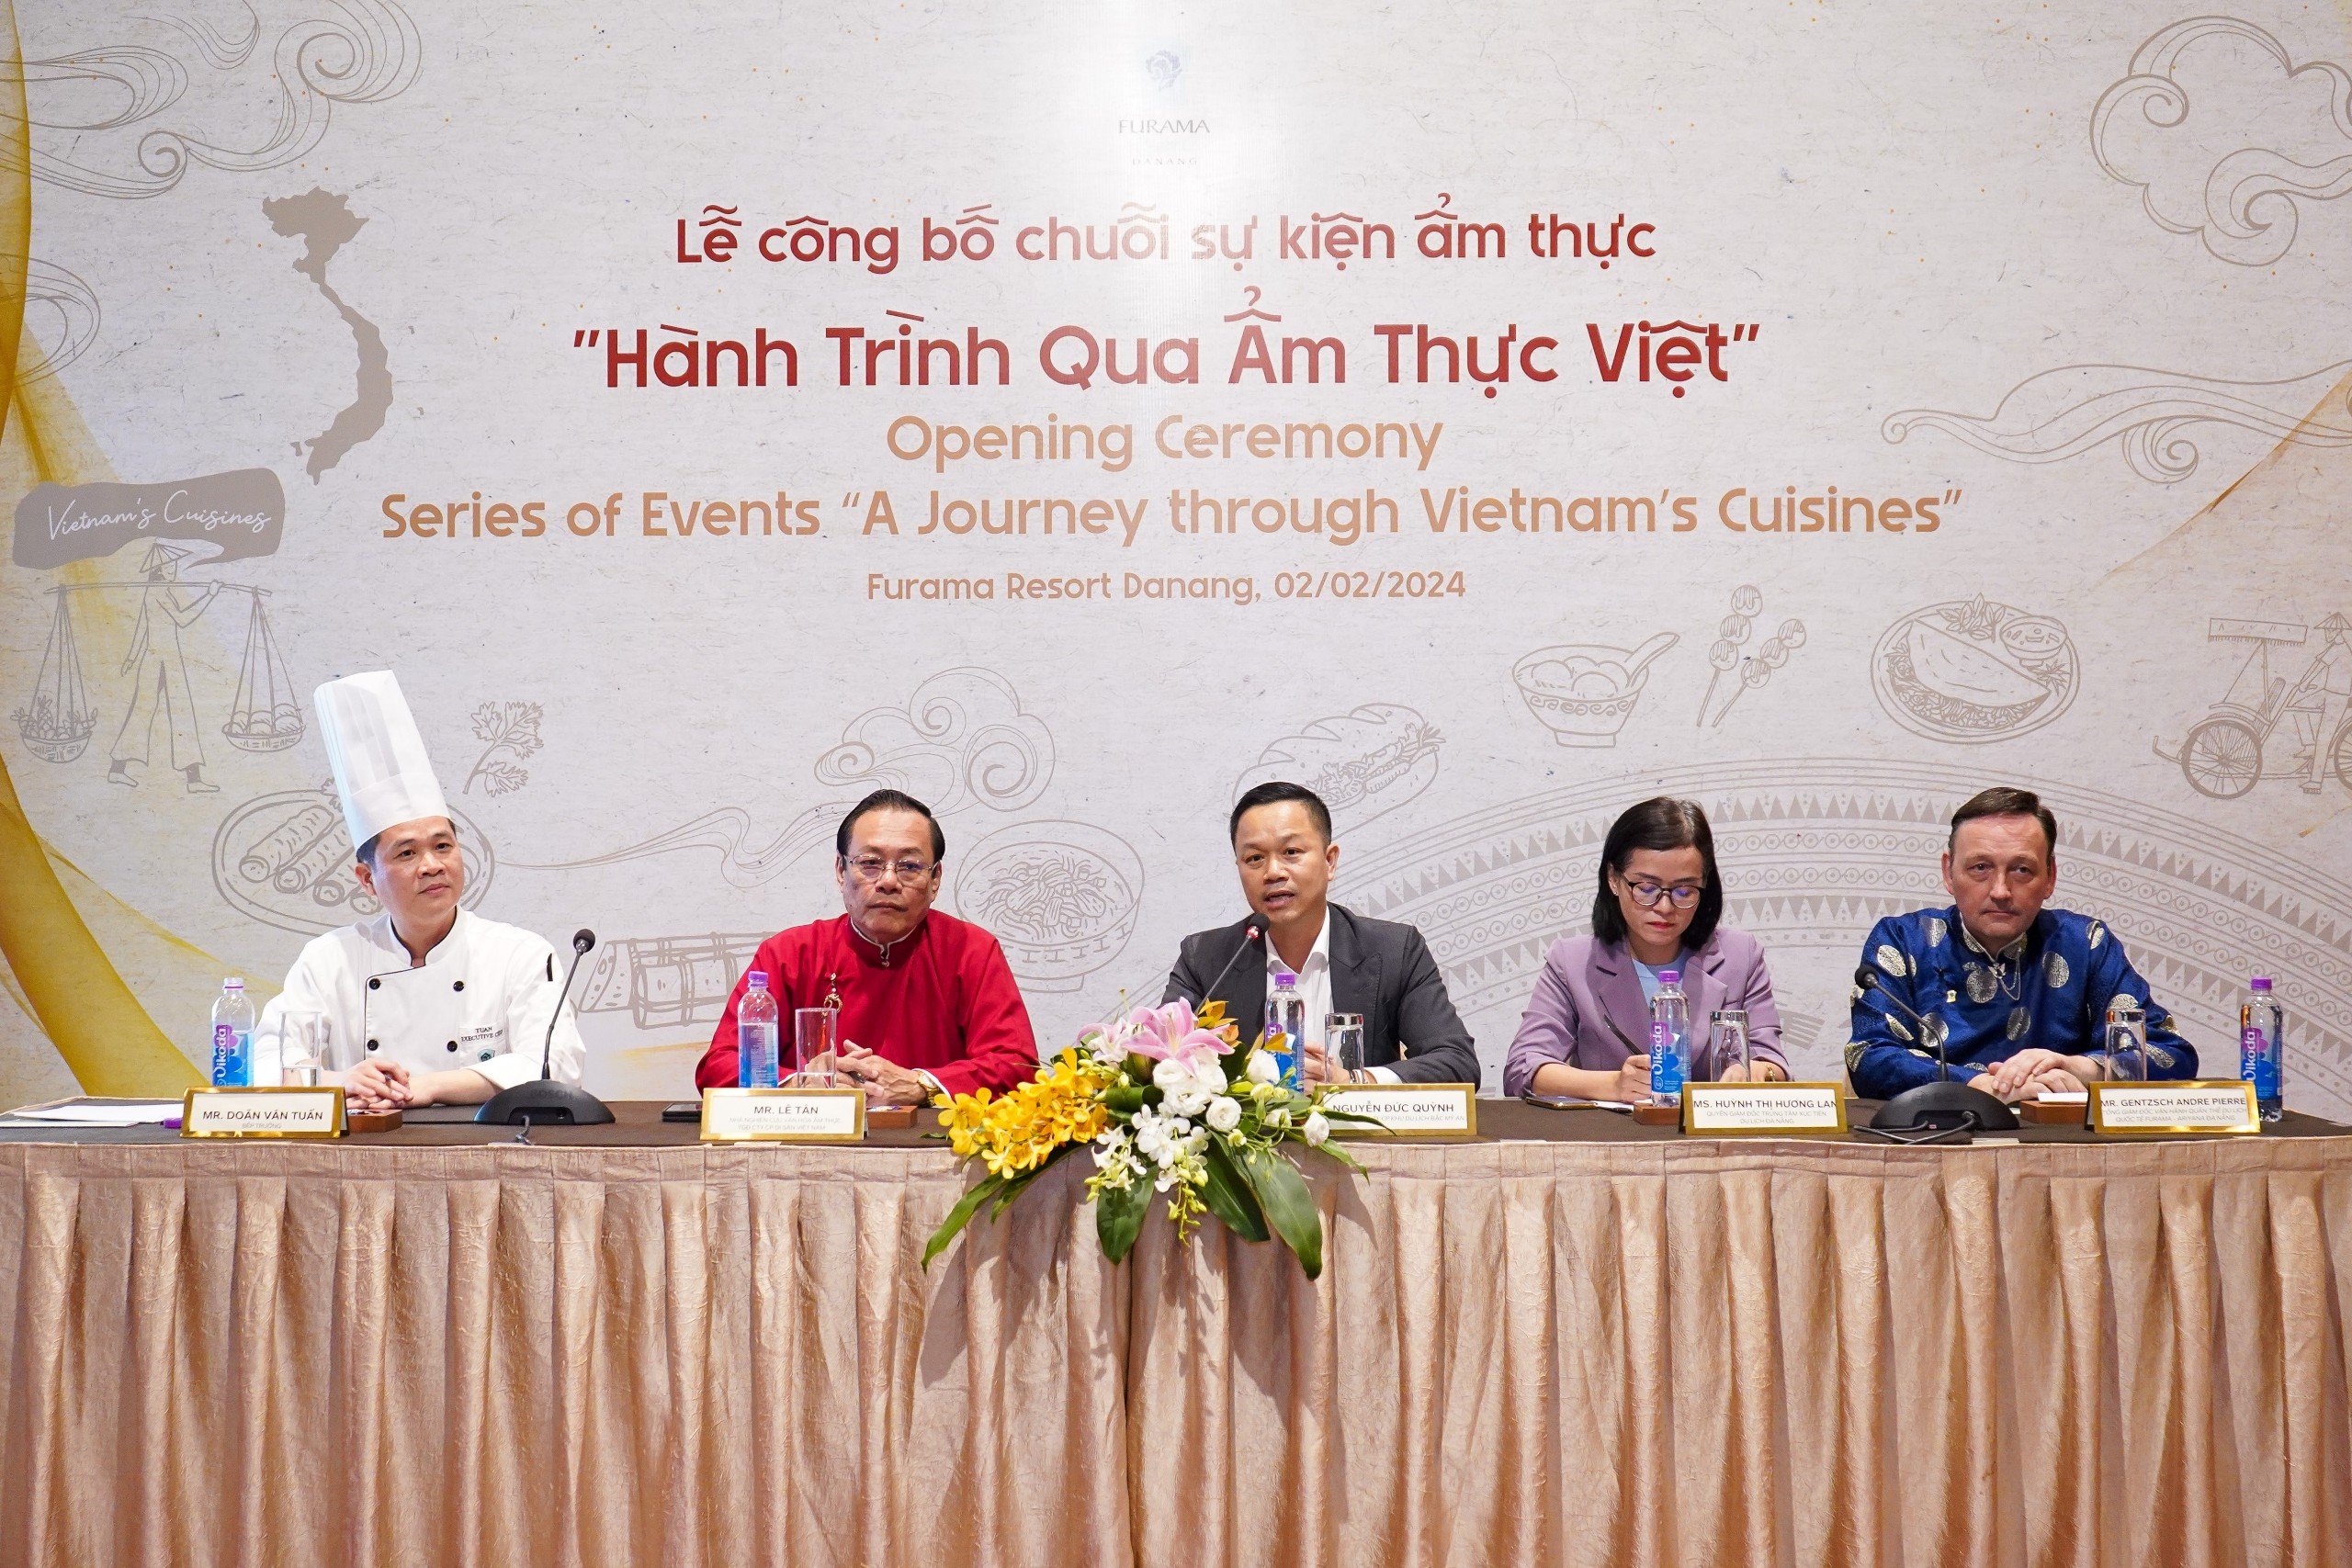 Văn hoá - Chuỗi sự kiện hành trình qua ẩm thực Việt ở Đà Nẵng có gì đặc biệt?